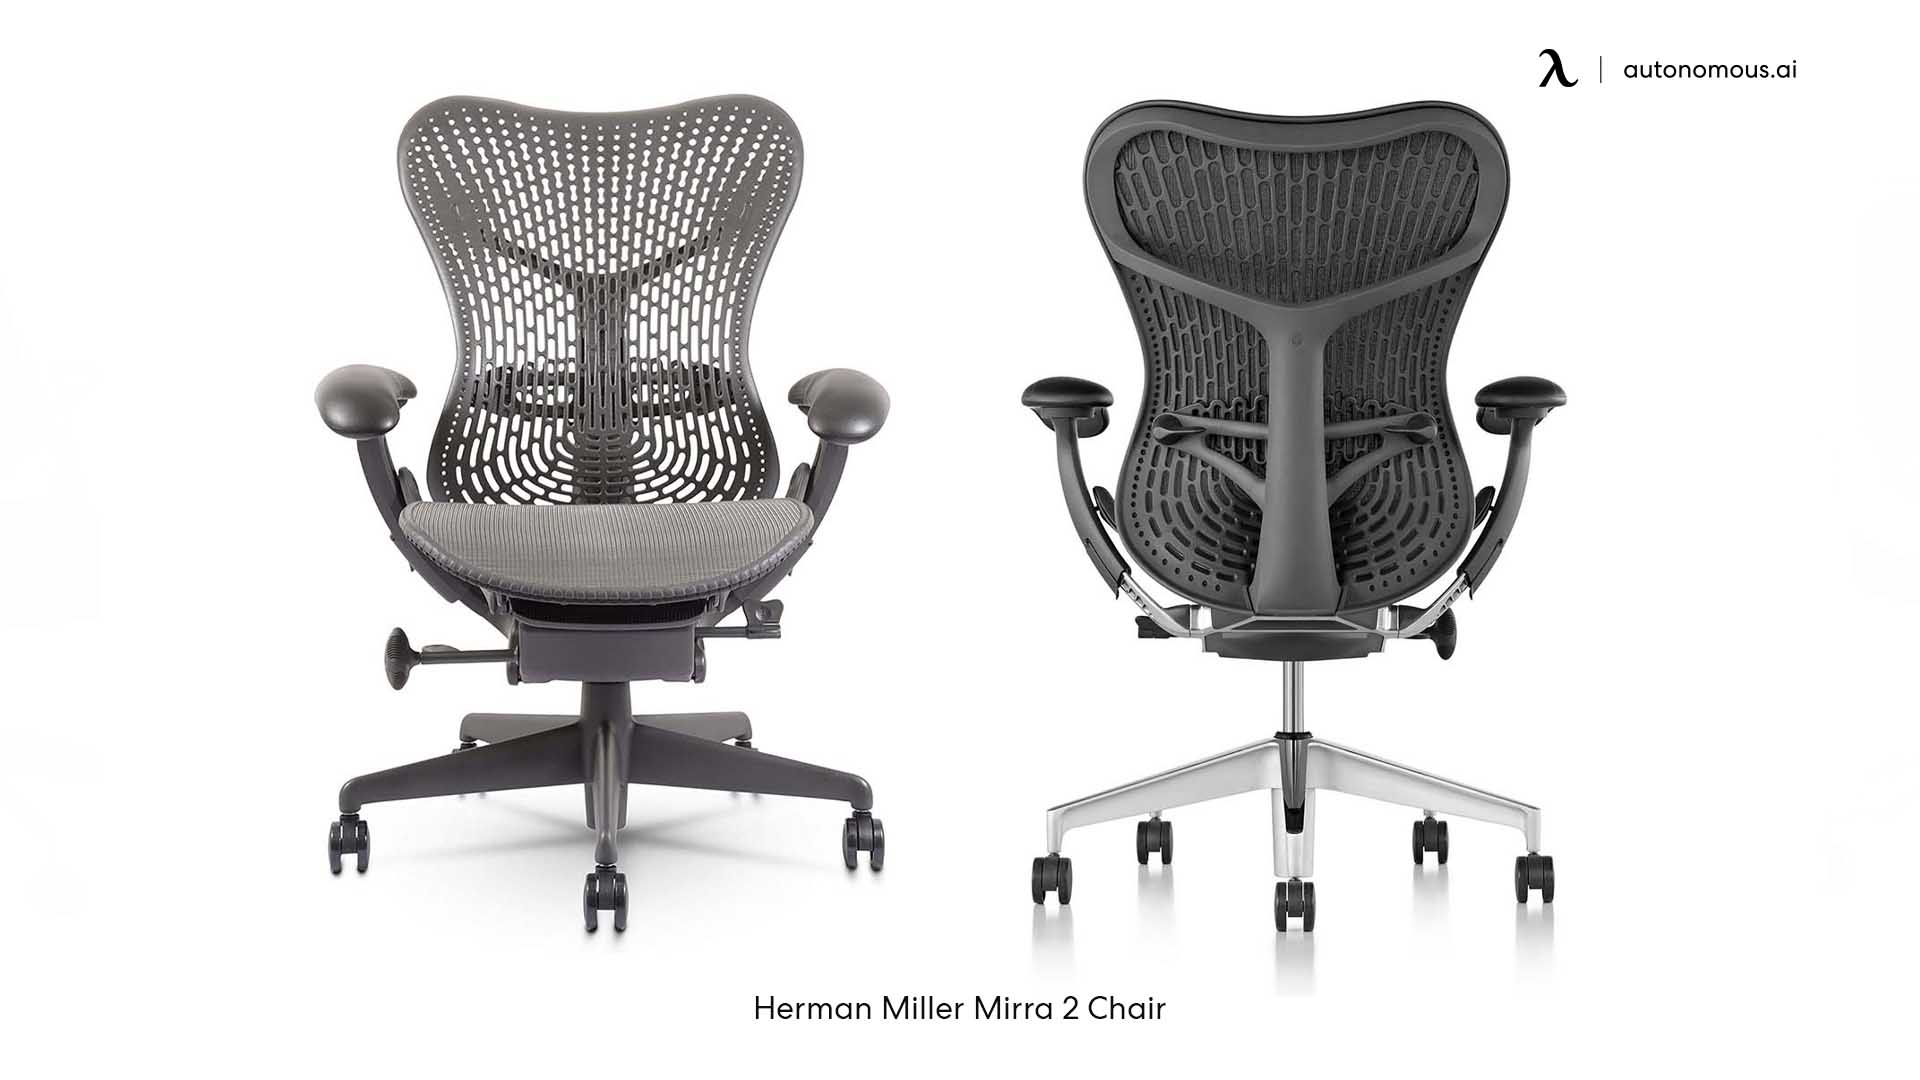 Herman-Miller Mirra 2 trendy desk chair